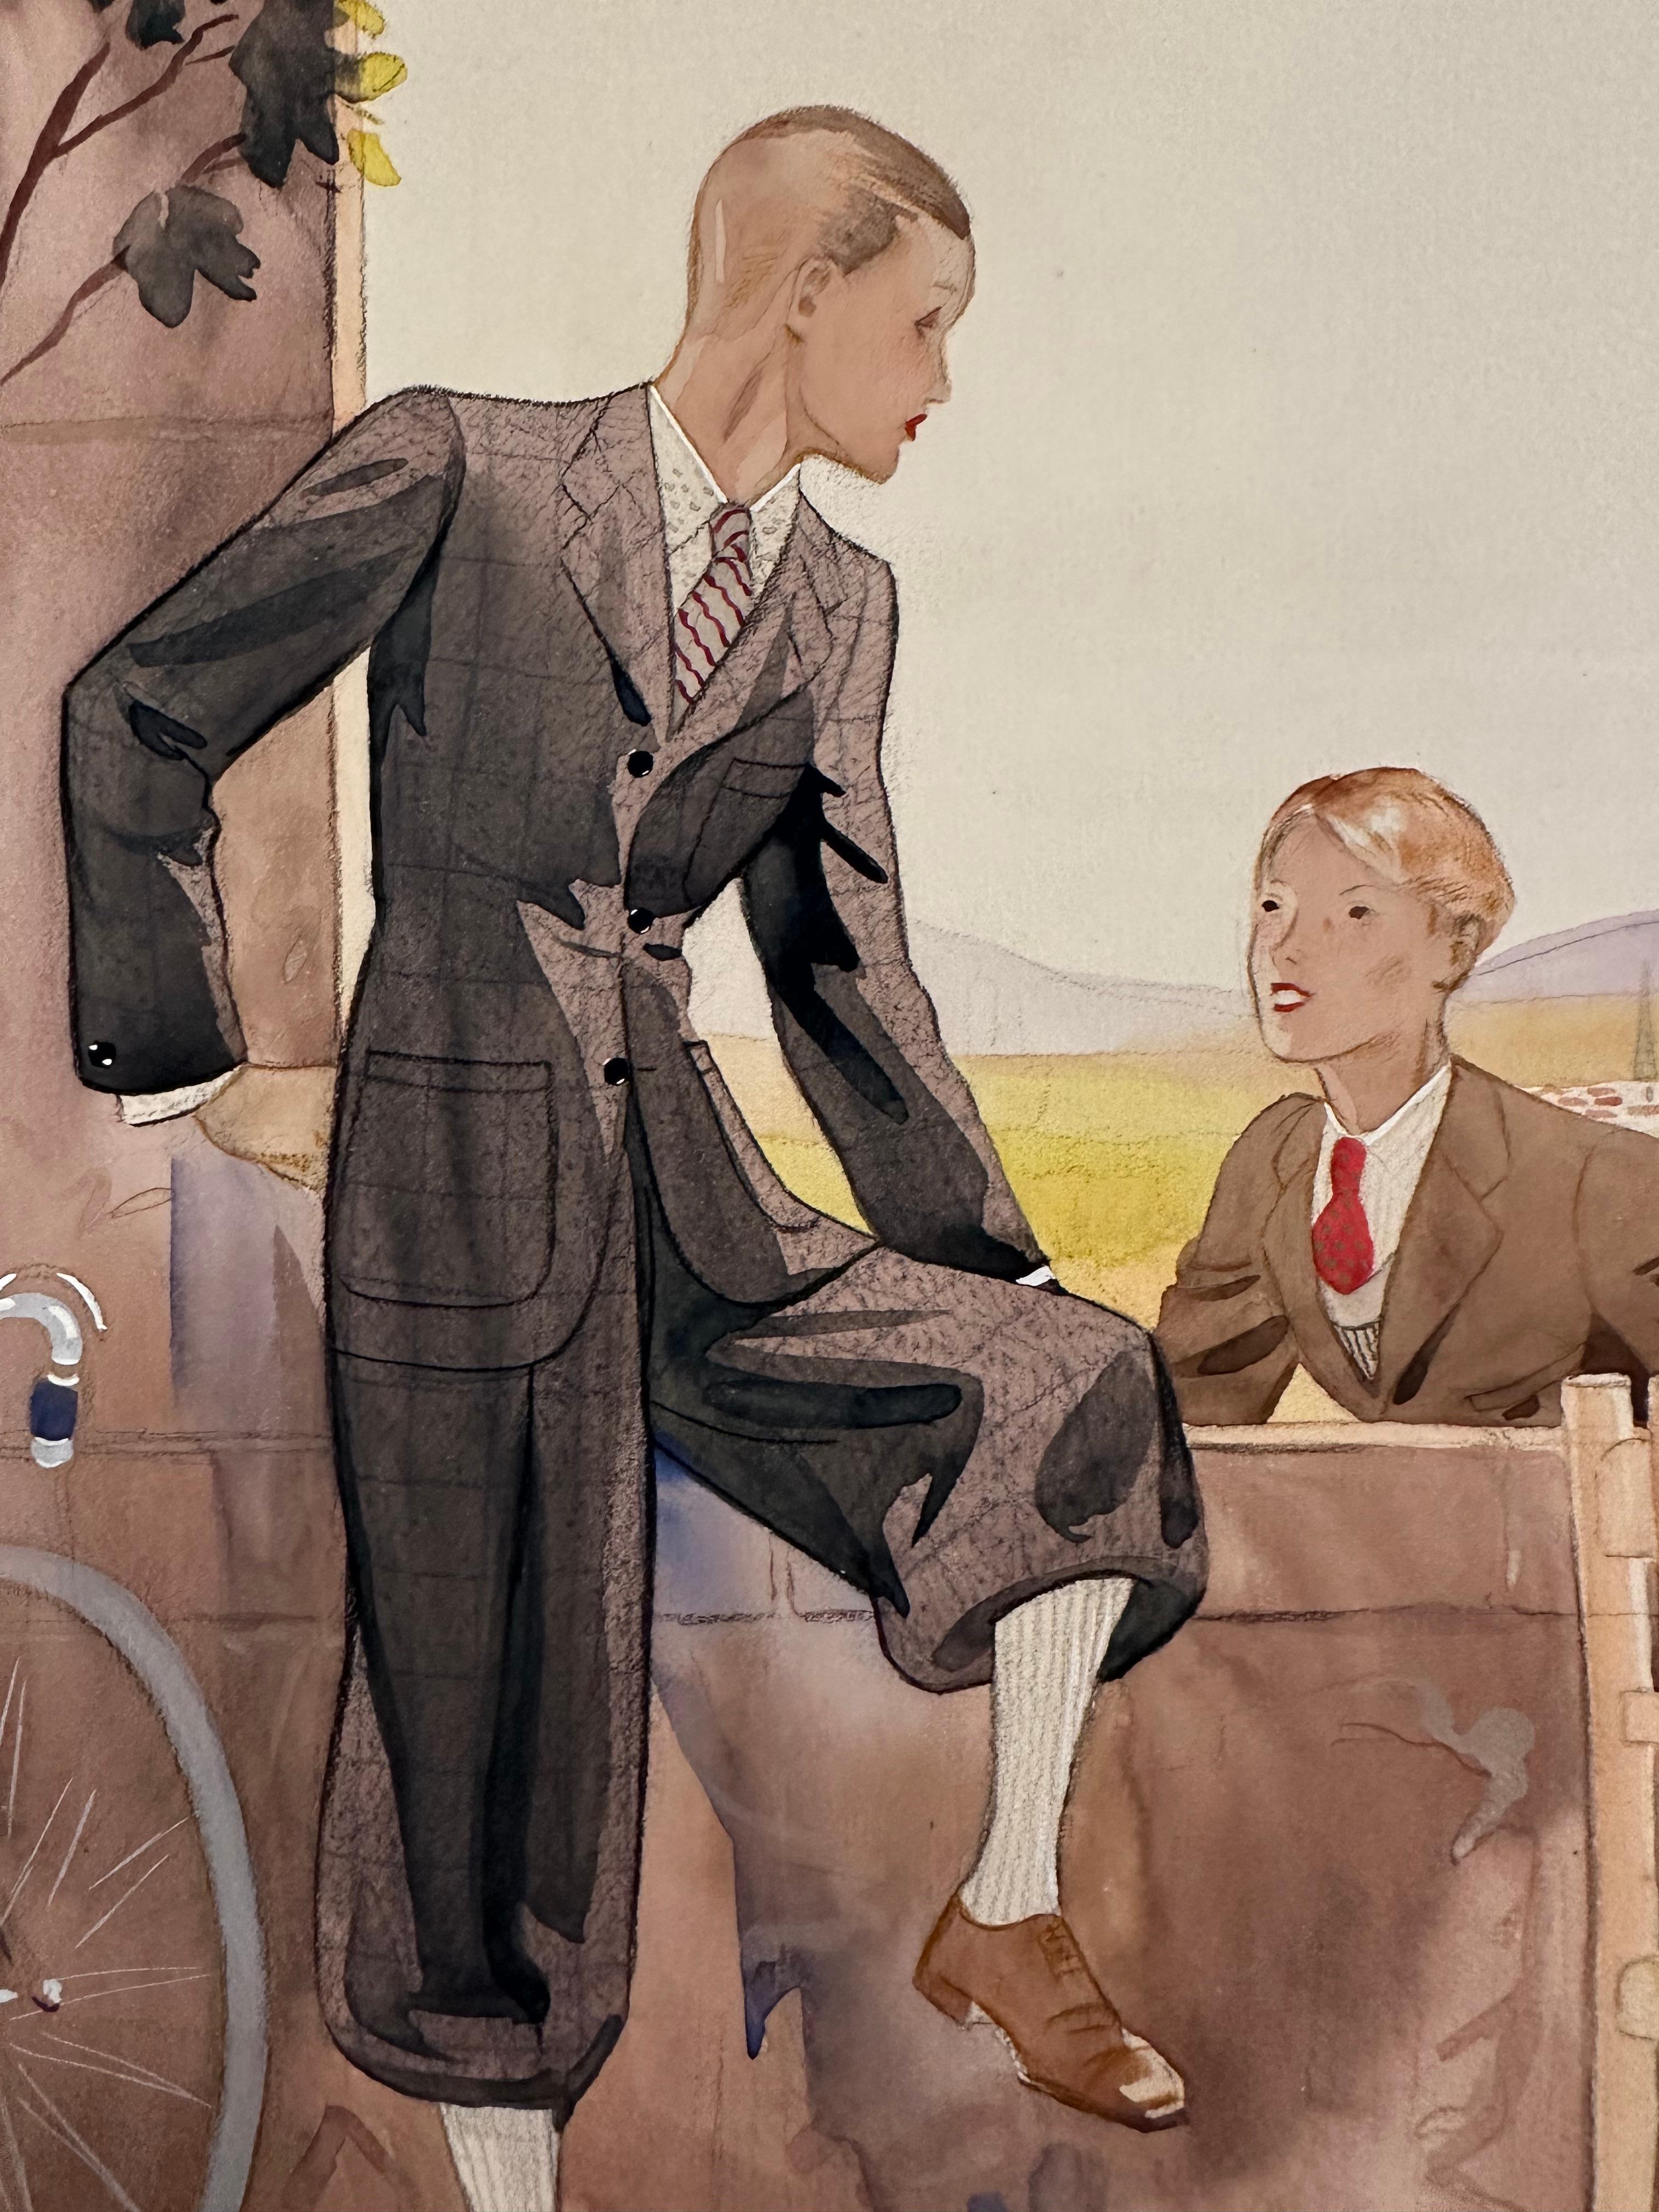 Marc-Luc (Franzose, tätig in den 1920er und 30er Jahren). Illustration von Jungenmode, ca. 1920er Jahre. Aquarell und Bleistift auf Papier, Bild misst 8 x 11 Zoll auf einer Tafel von 12,5 x 18 Zoll. Signiert unten links. Ausgezeichneter Zustand.